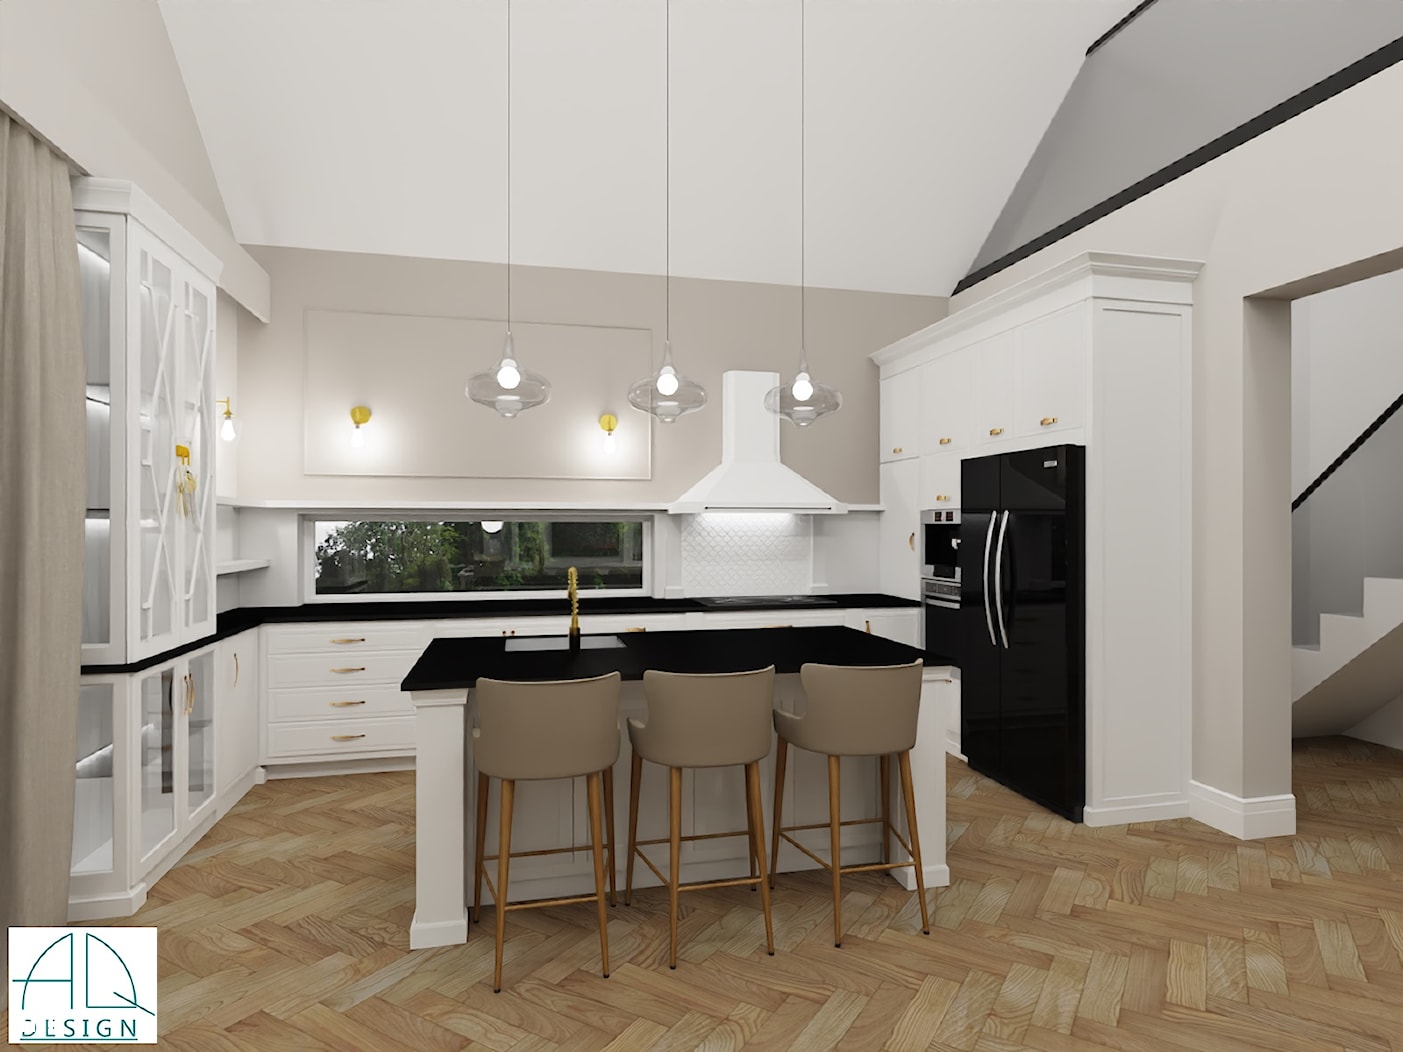 salon z kuchnią w stylu New Hamptons - zdjęcie od AQ Design - Homebook